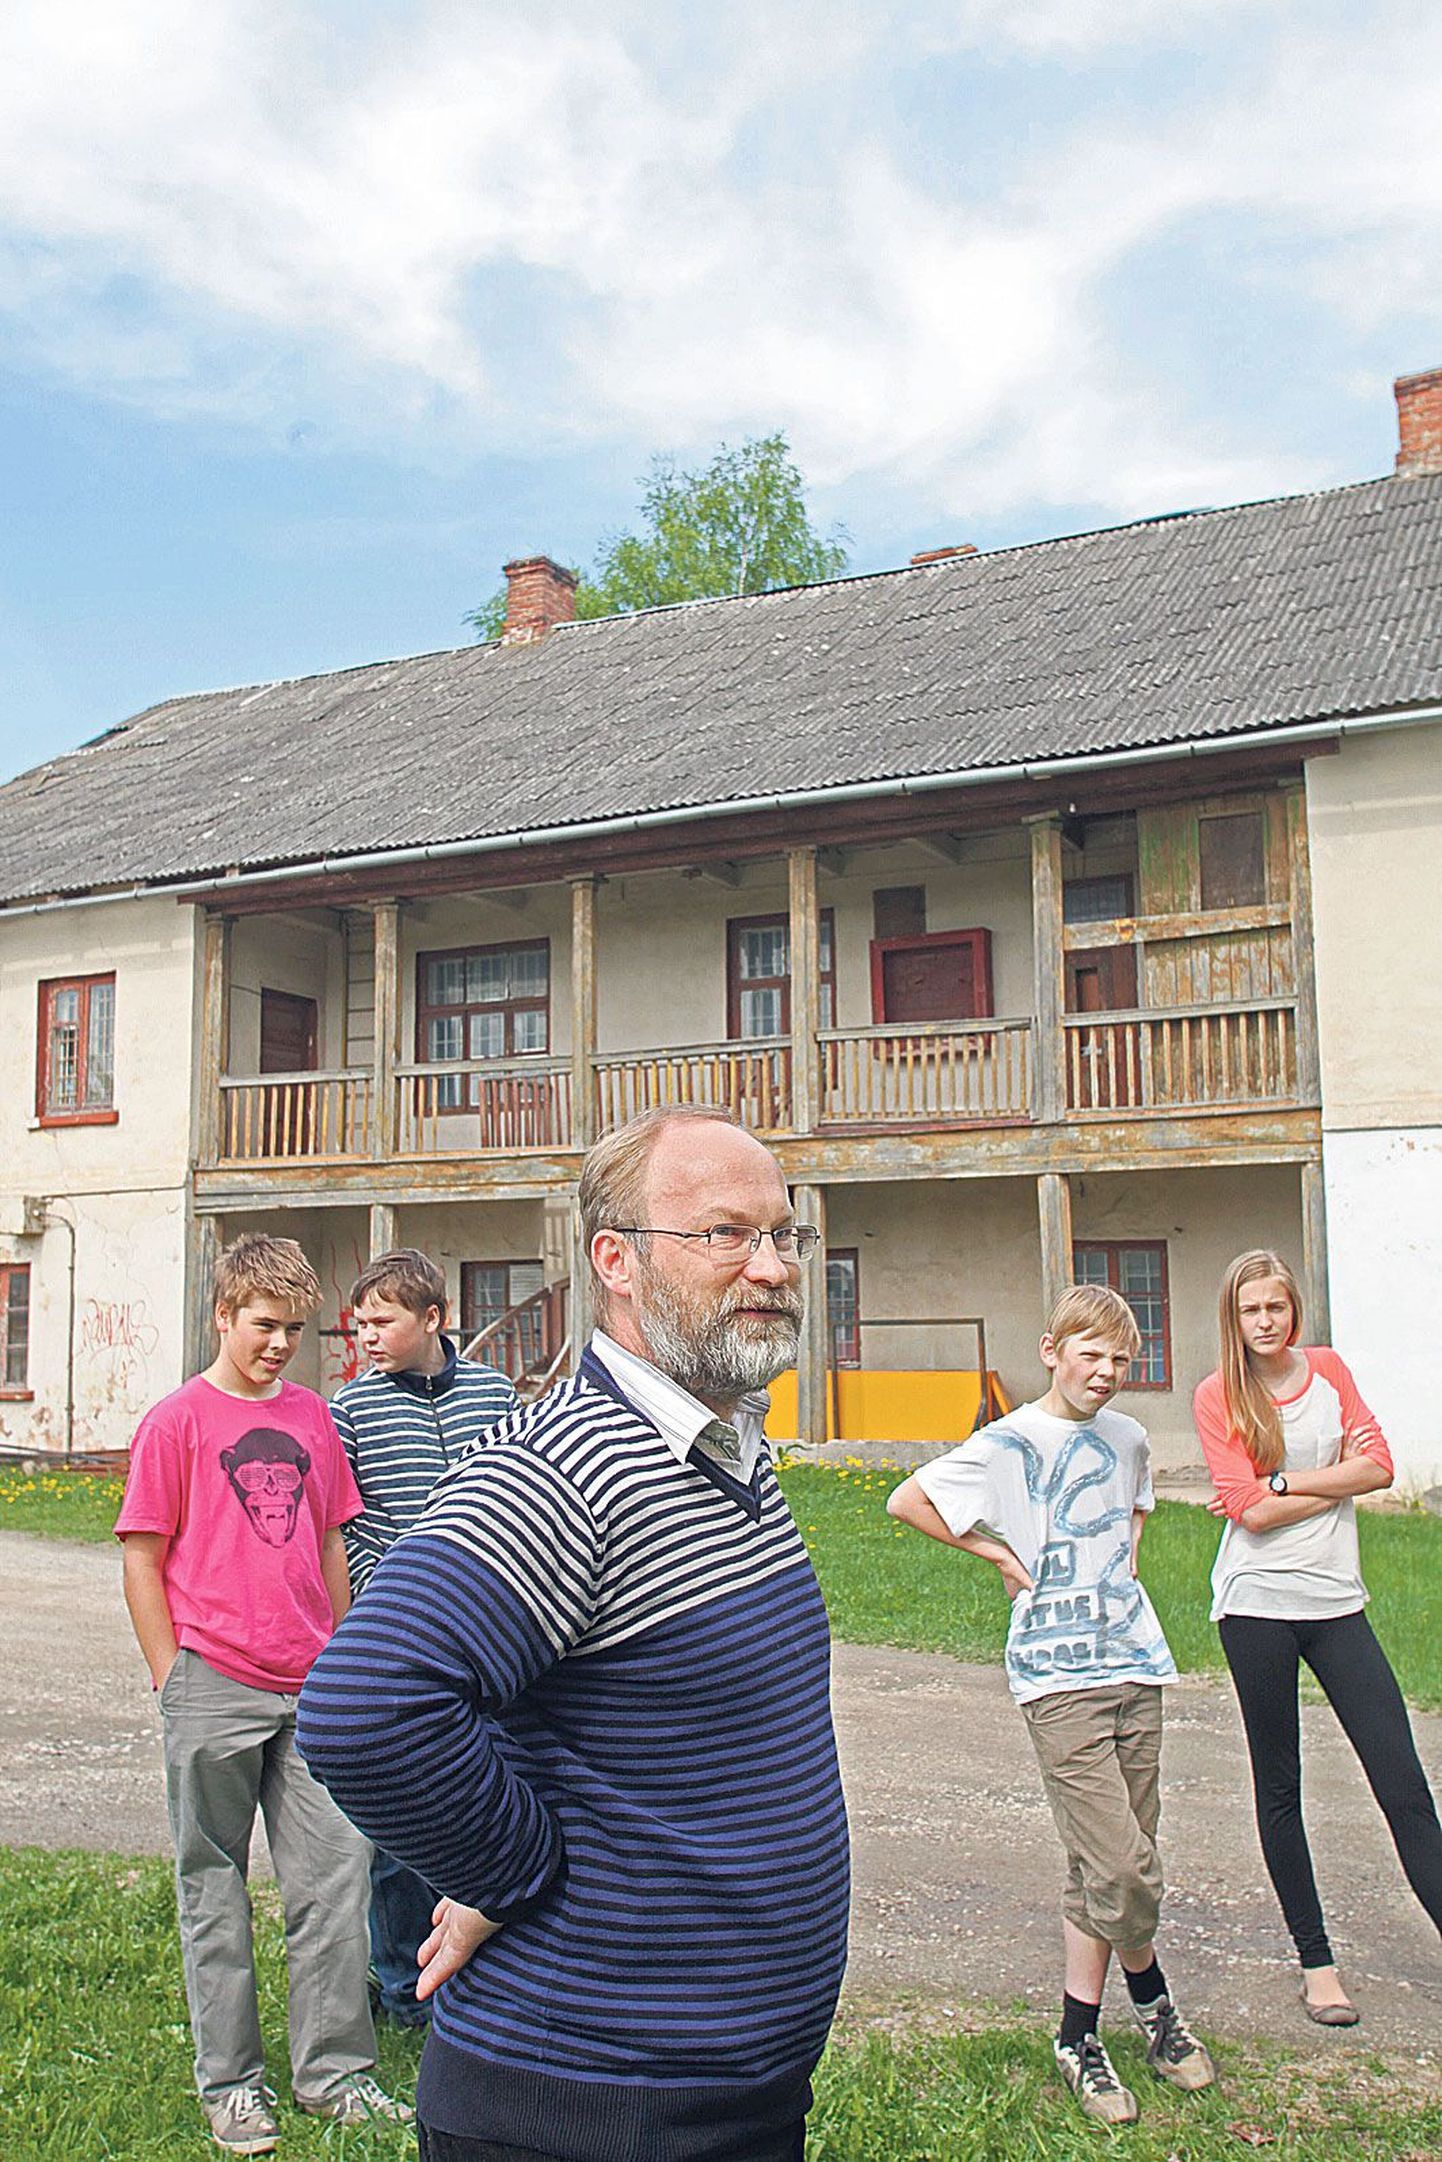 Tamme gümnaasiumi direktor Vallo Reima näitab kooli õpilastele omaaegse mõisa peahoonet, mille olemasolust ei ole suuremal osal tartlastest aimugi.